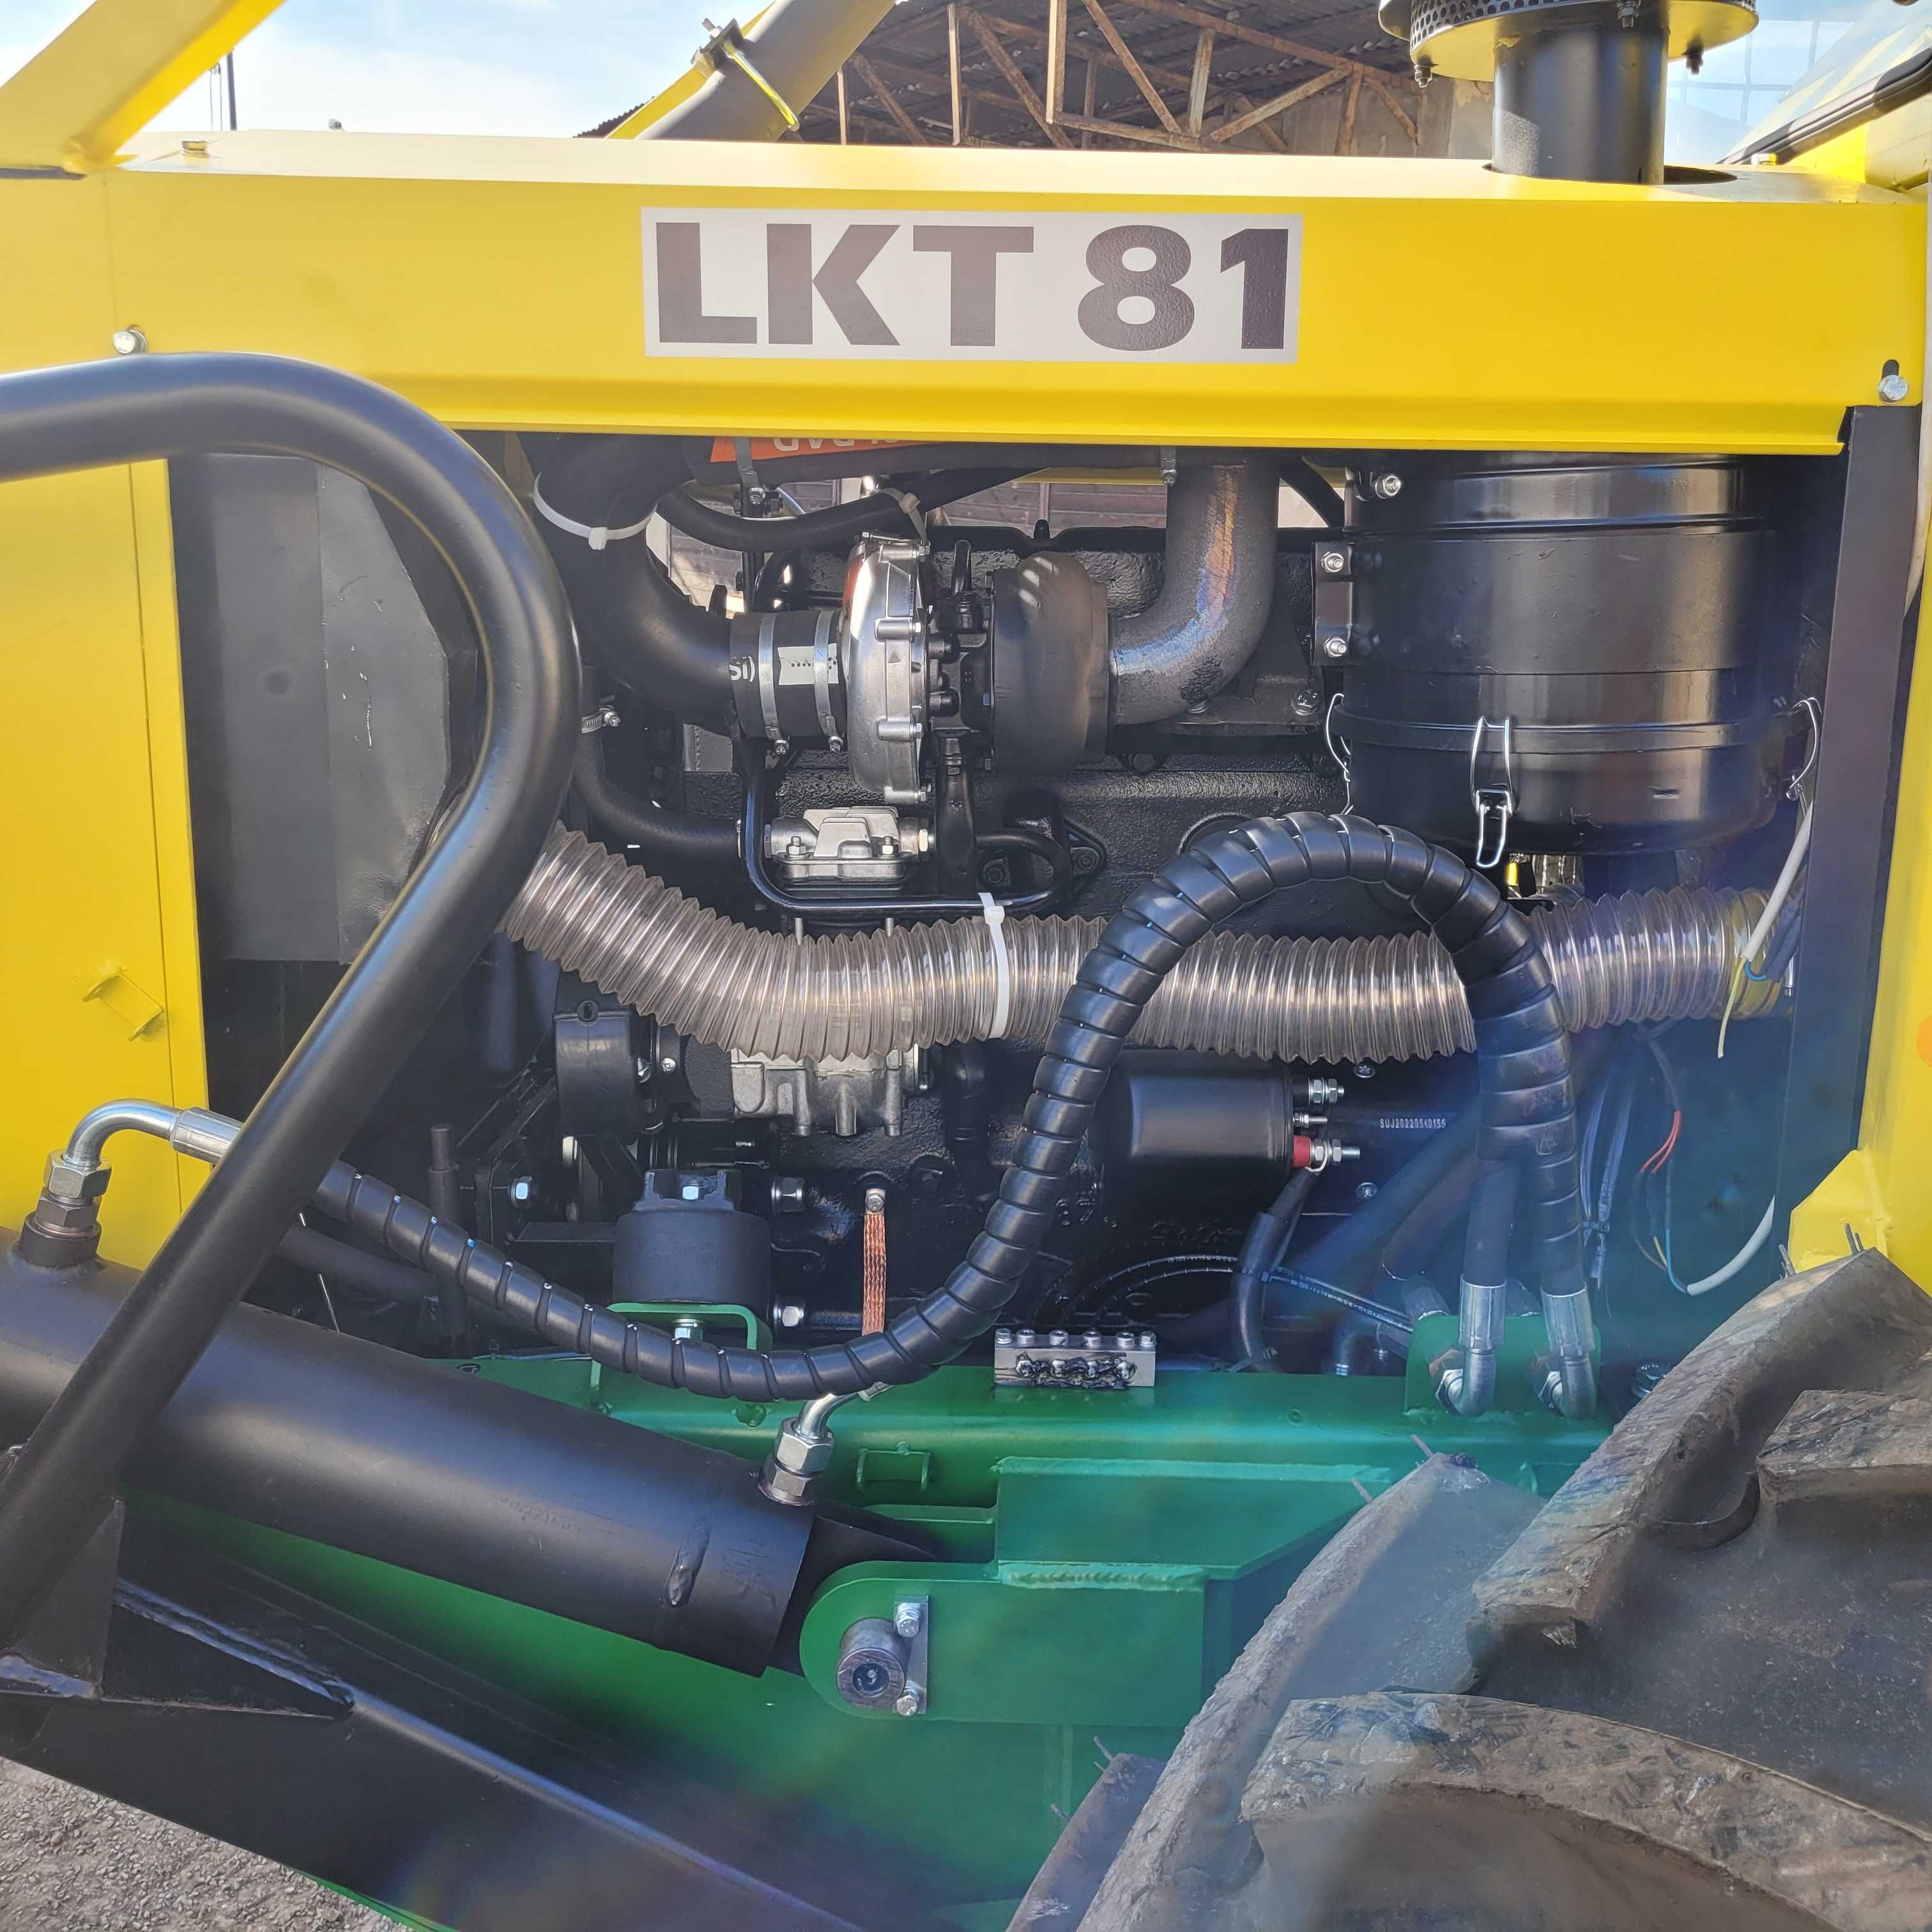 Ciągnik leśny Lkt 81 Turbo po kapitalnym remoncie